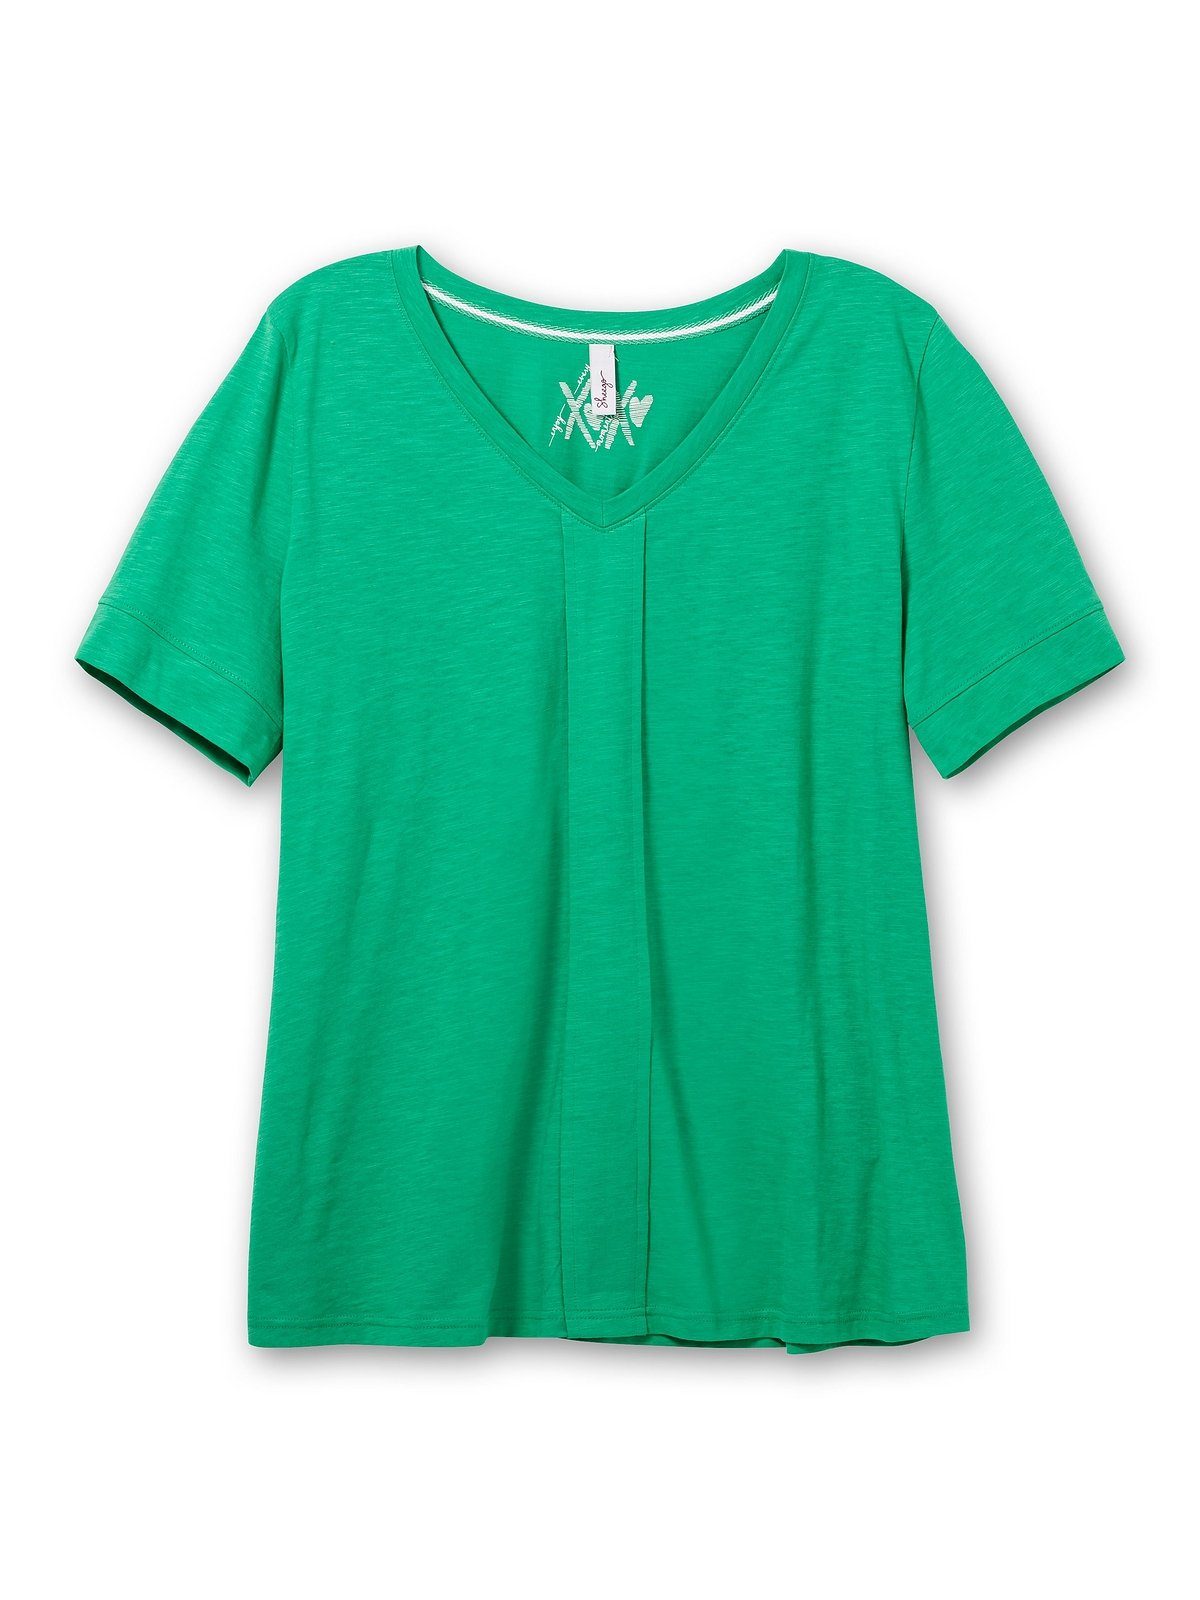 Sheego T-Shirt Große Größen vorne blattgrün mit Falte dekorativer